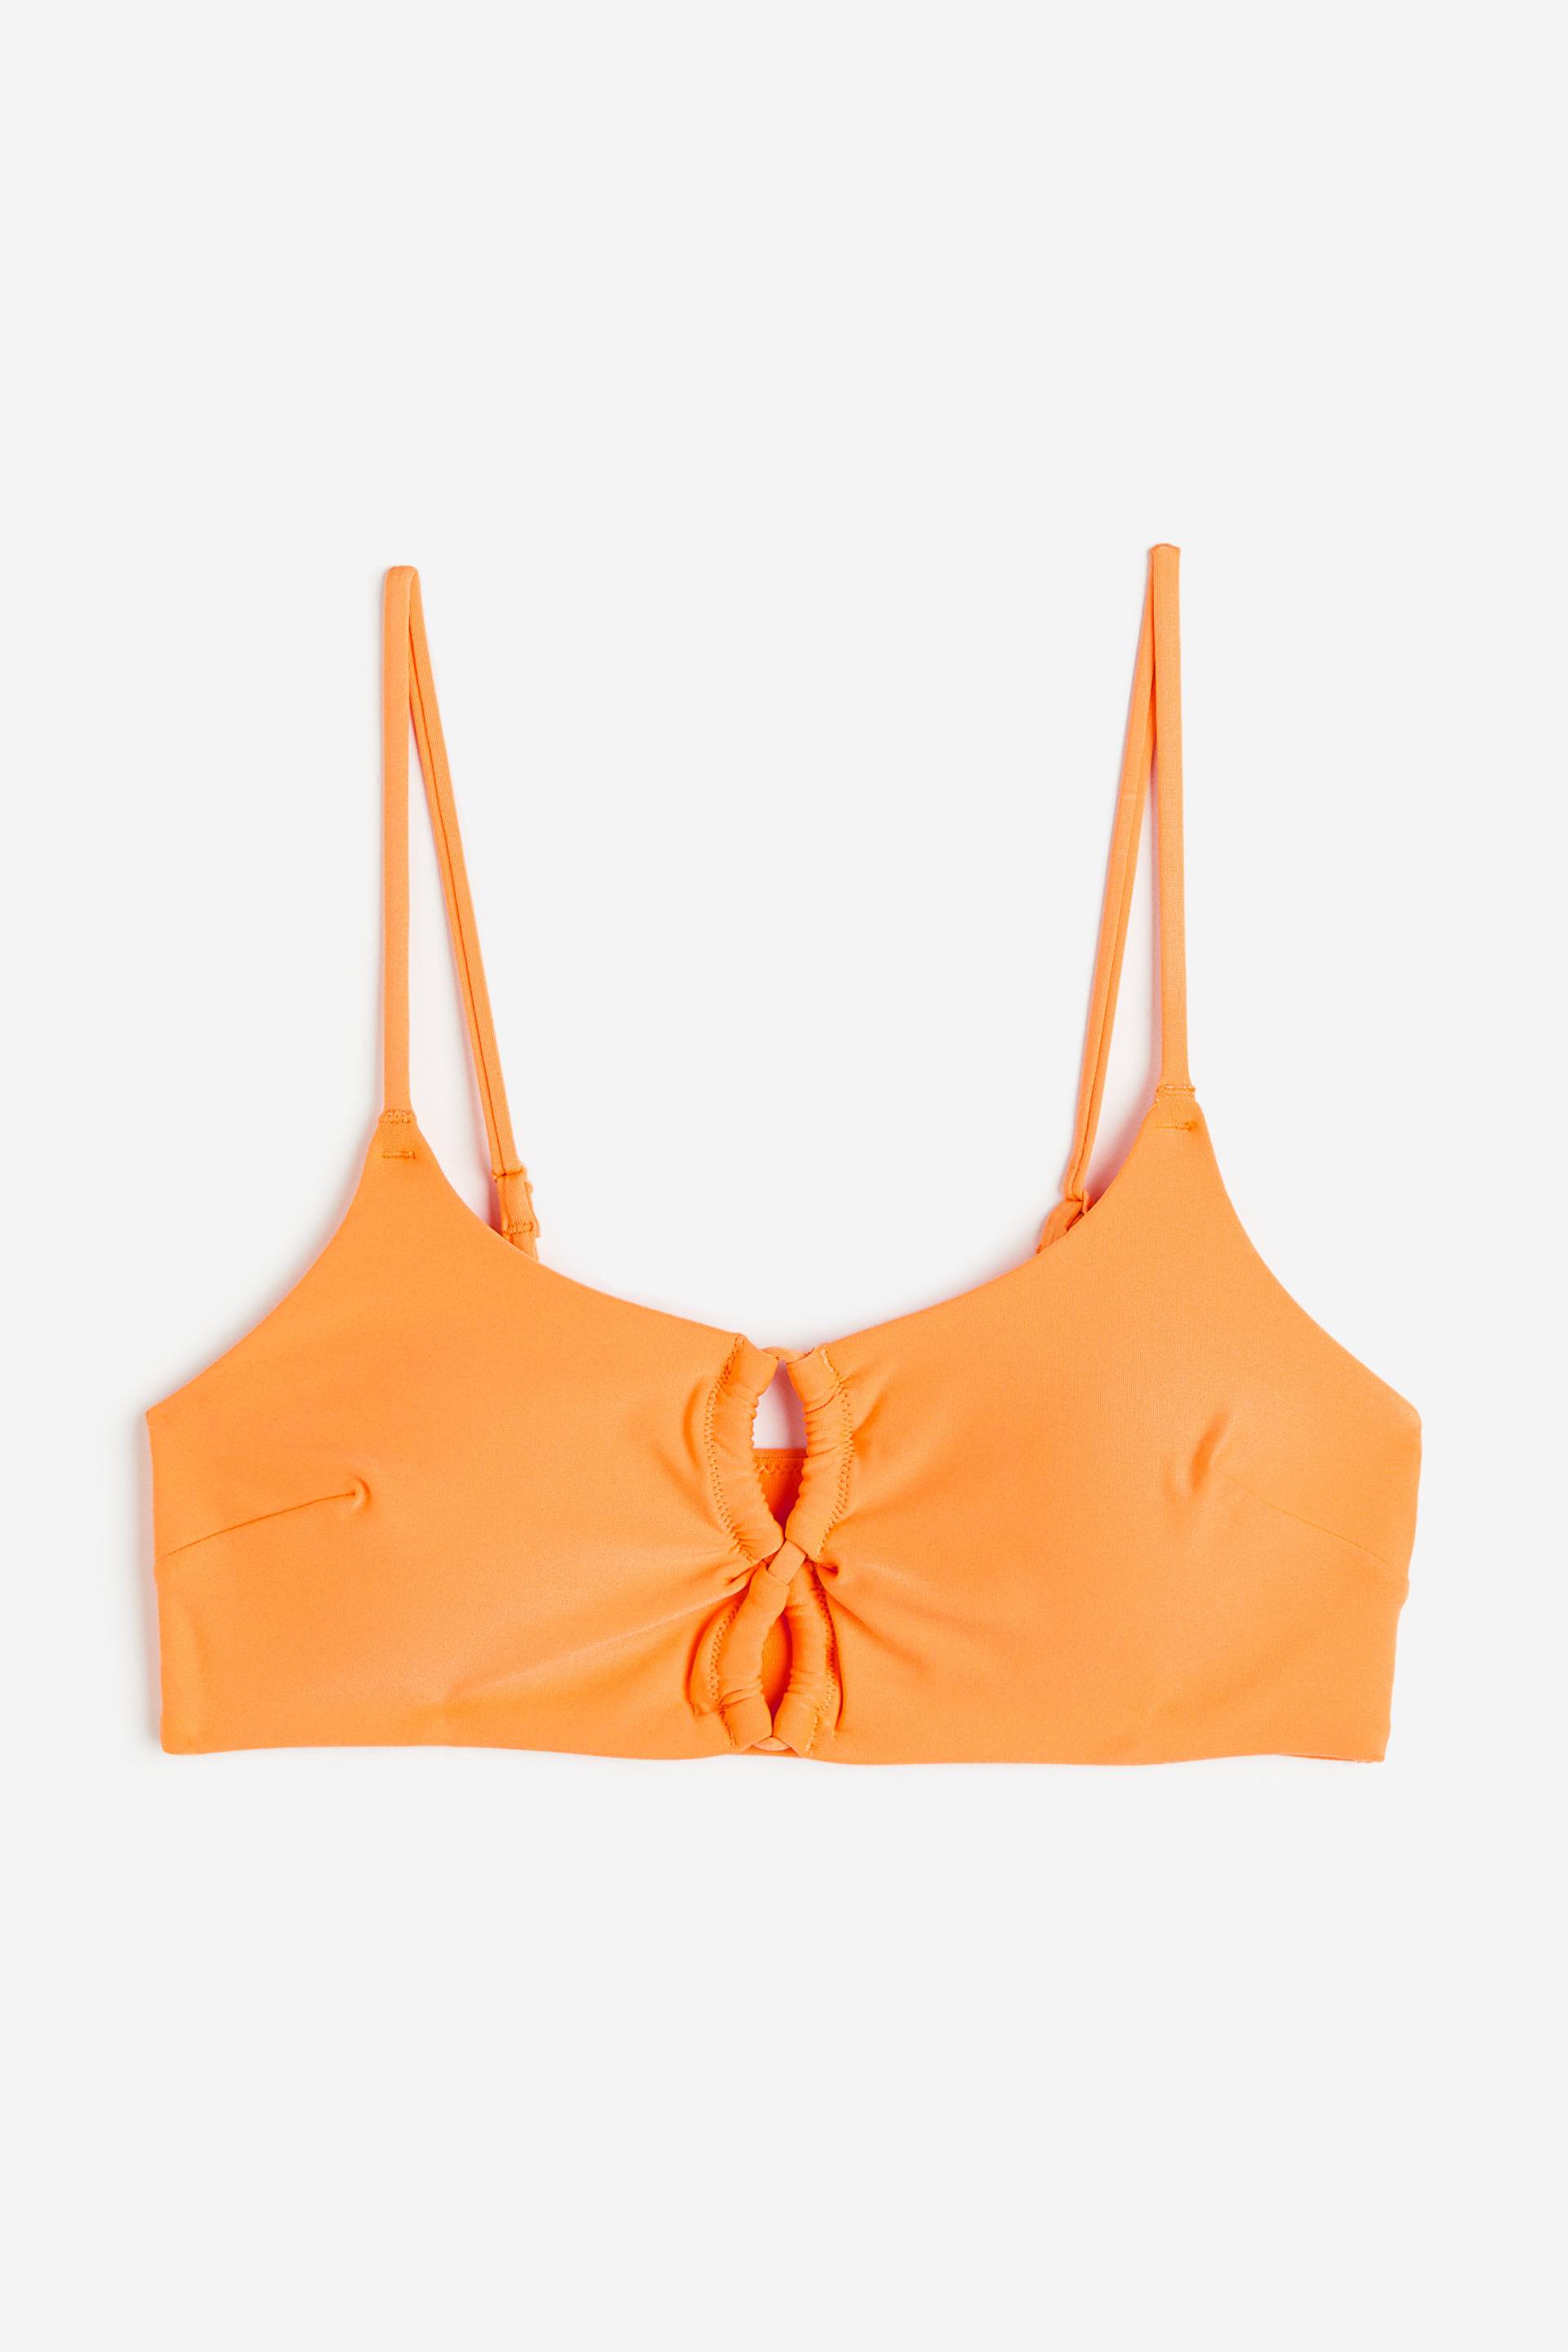 H&M Wattiertes Bikinitop Orange, Bikini-Oberteil in Größe 36 von H&M